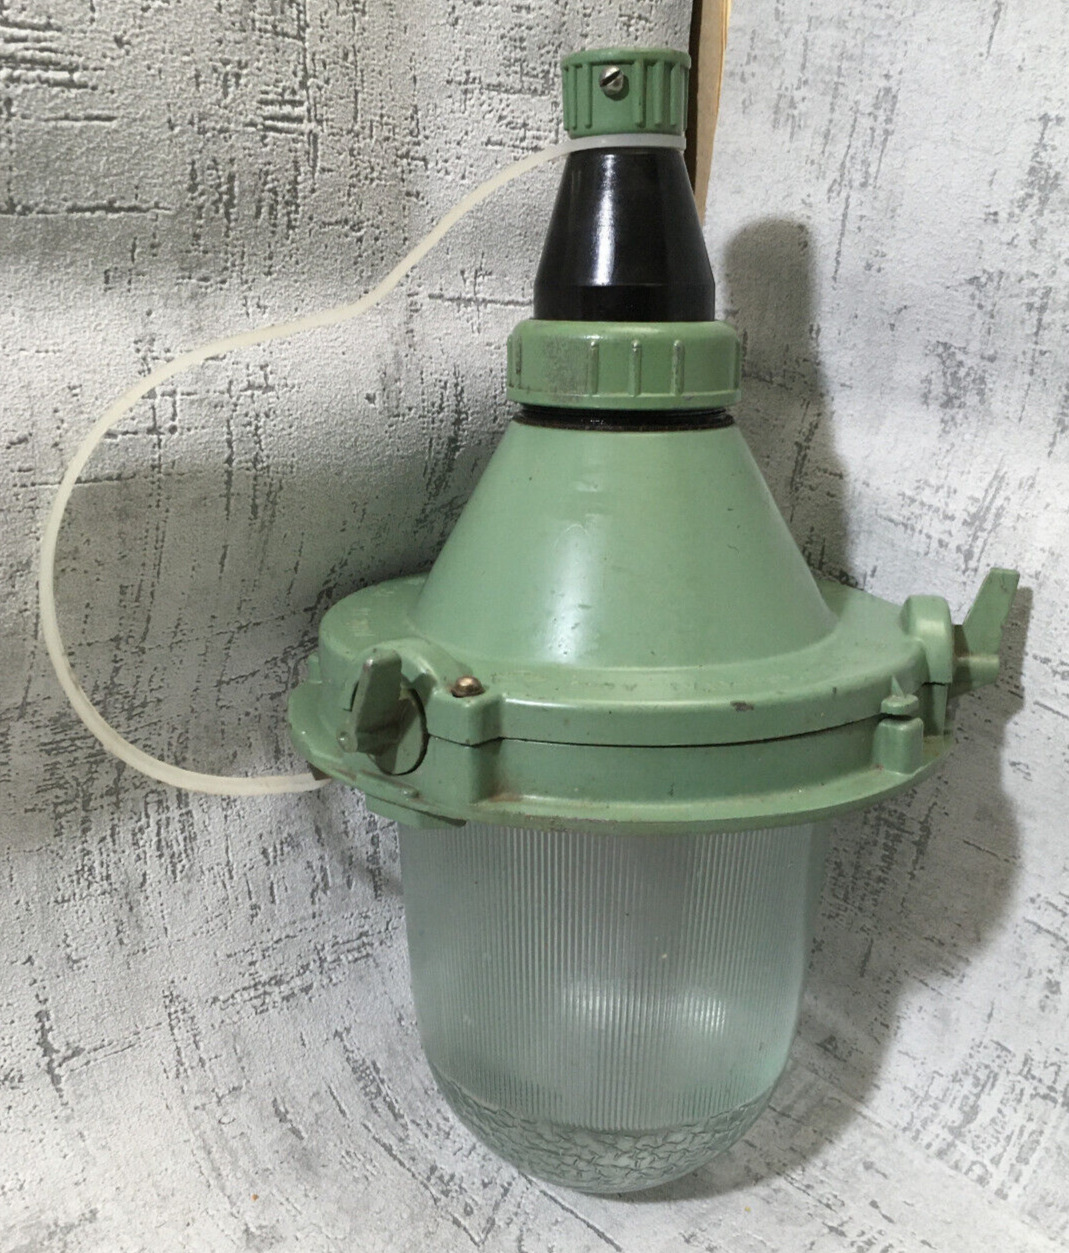 NOS Soviet USSR Vintage Industrial Pendant Lamp NSP11200. USSR quality mark IP62